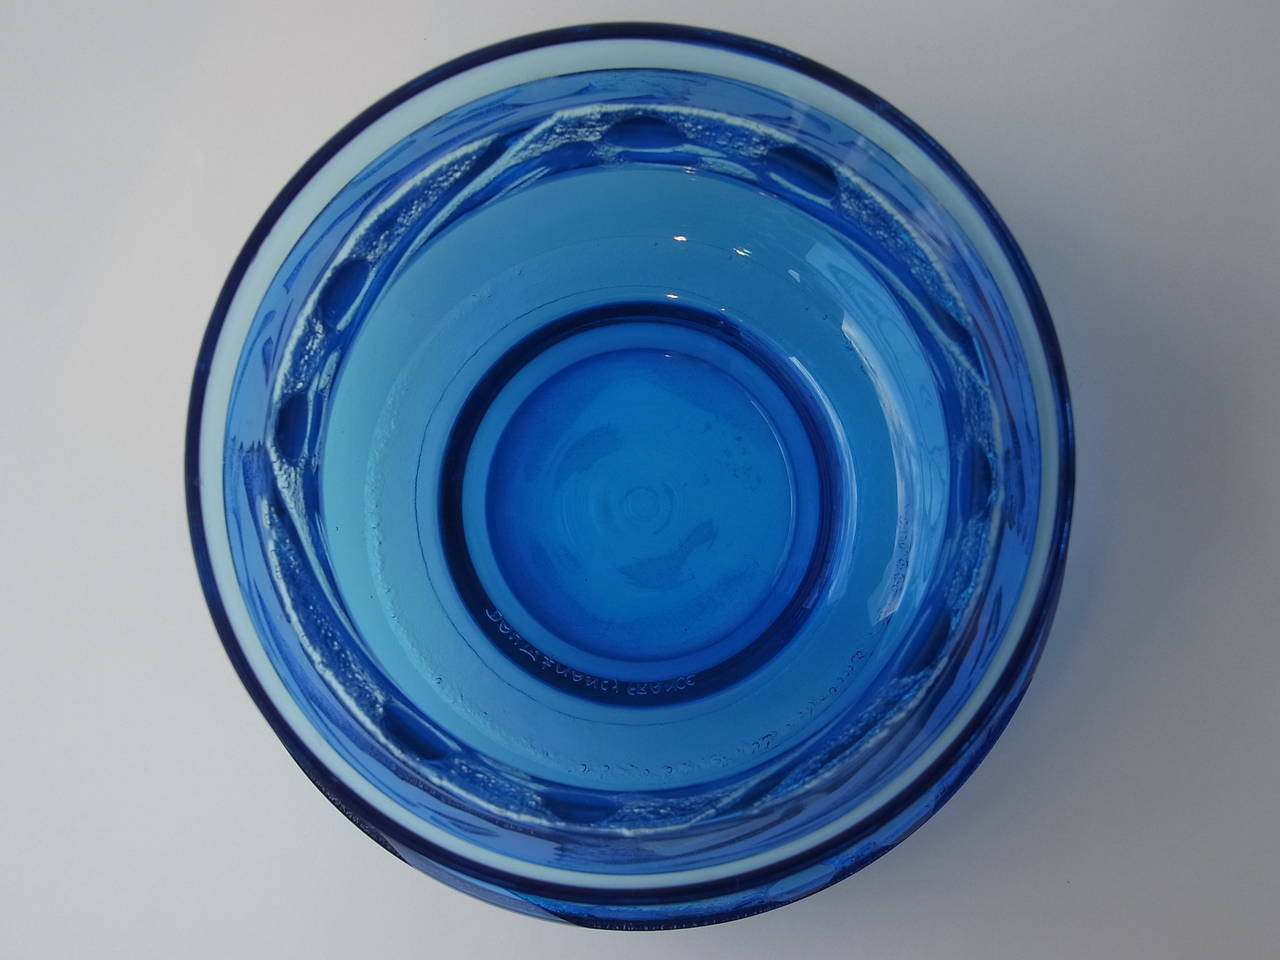 Mid-20th Century Art Deco Bleu Geometric Decor Acid Etched Glass Vase by Daum